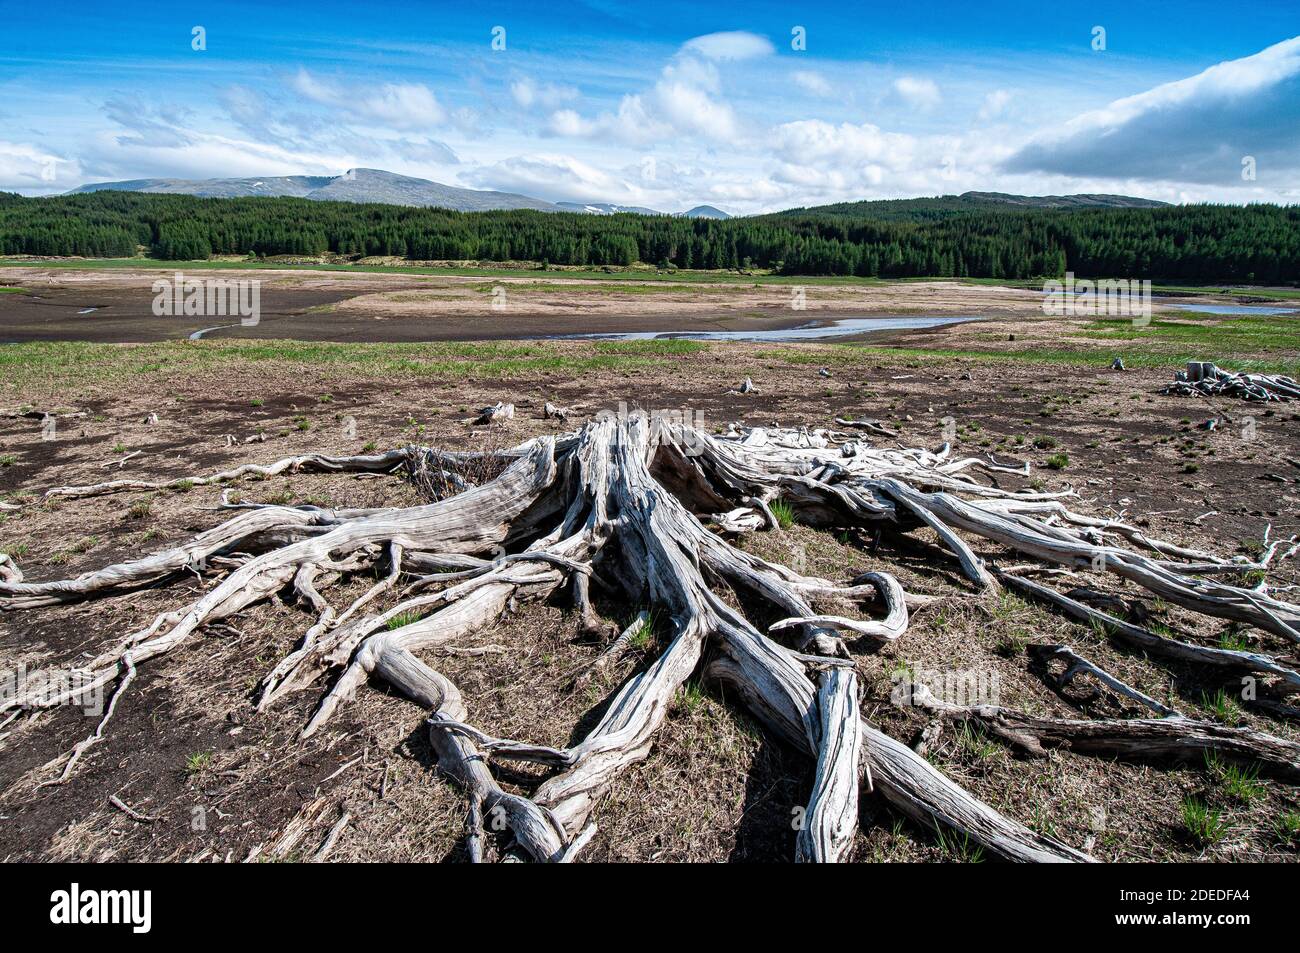 Las raíces de los árboles en un viejo avión de inundación donde la tala de agua execsiva ha matado a todos los árboles vivos. Foto de stock